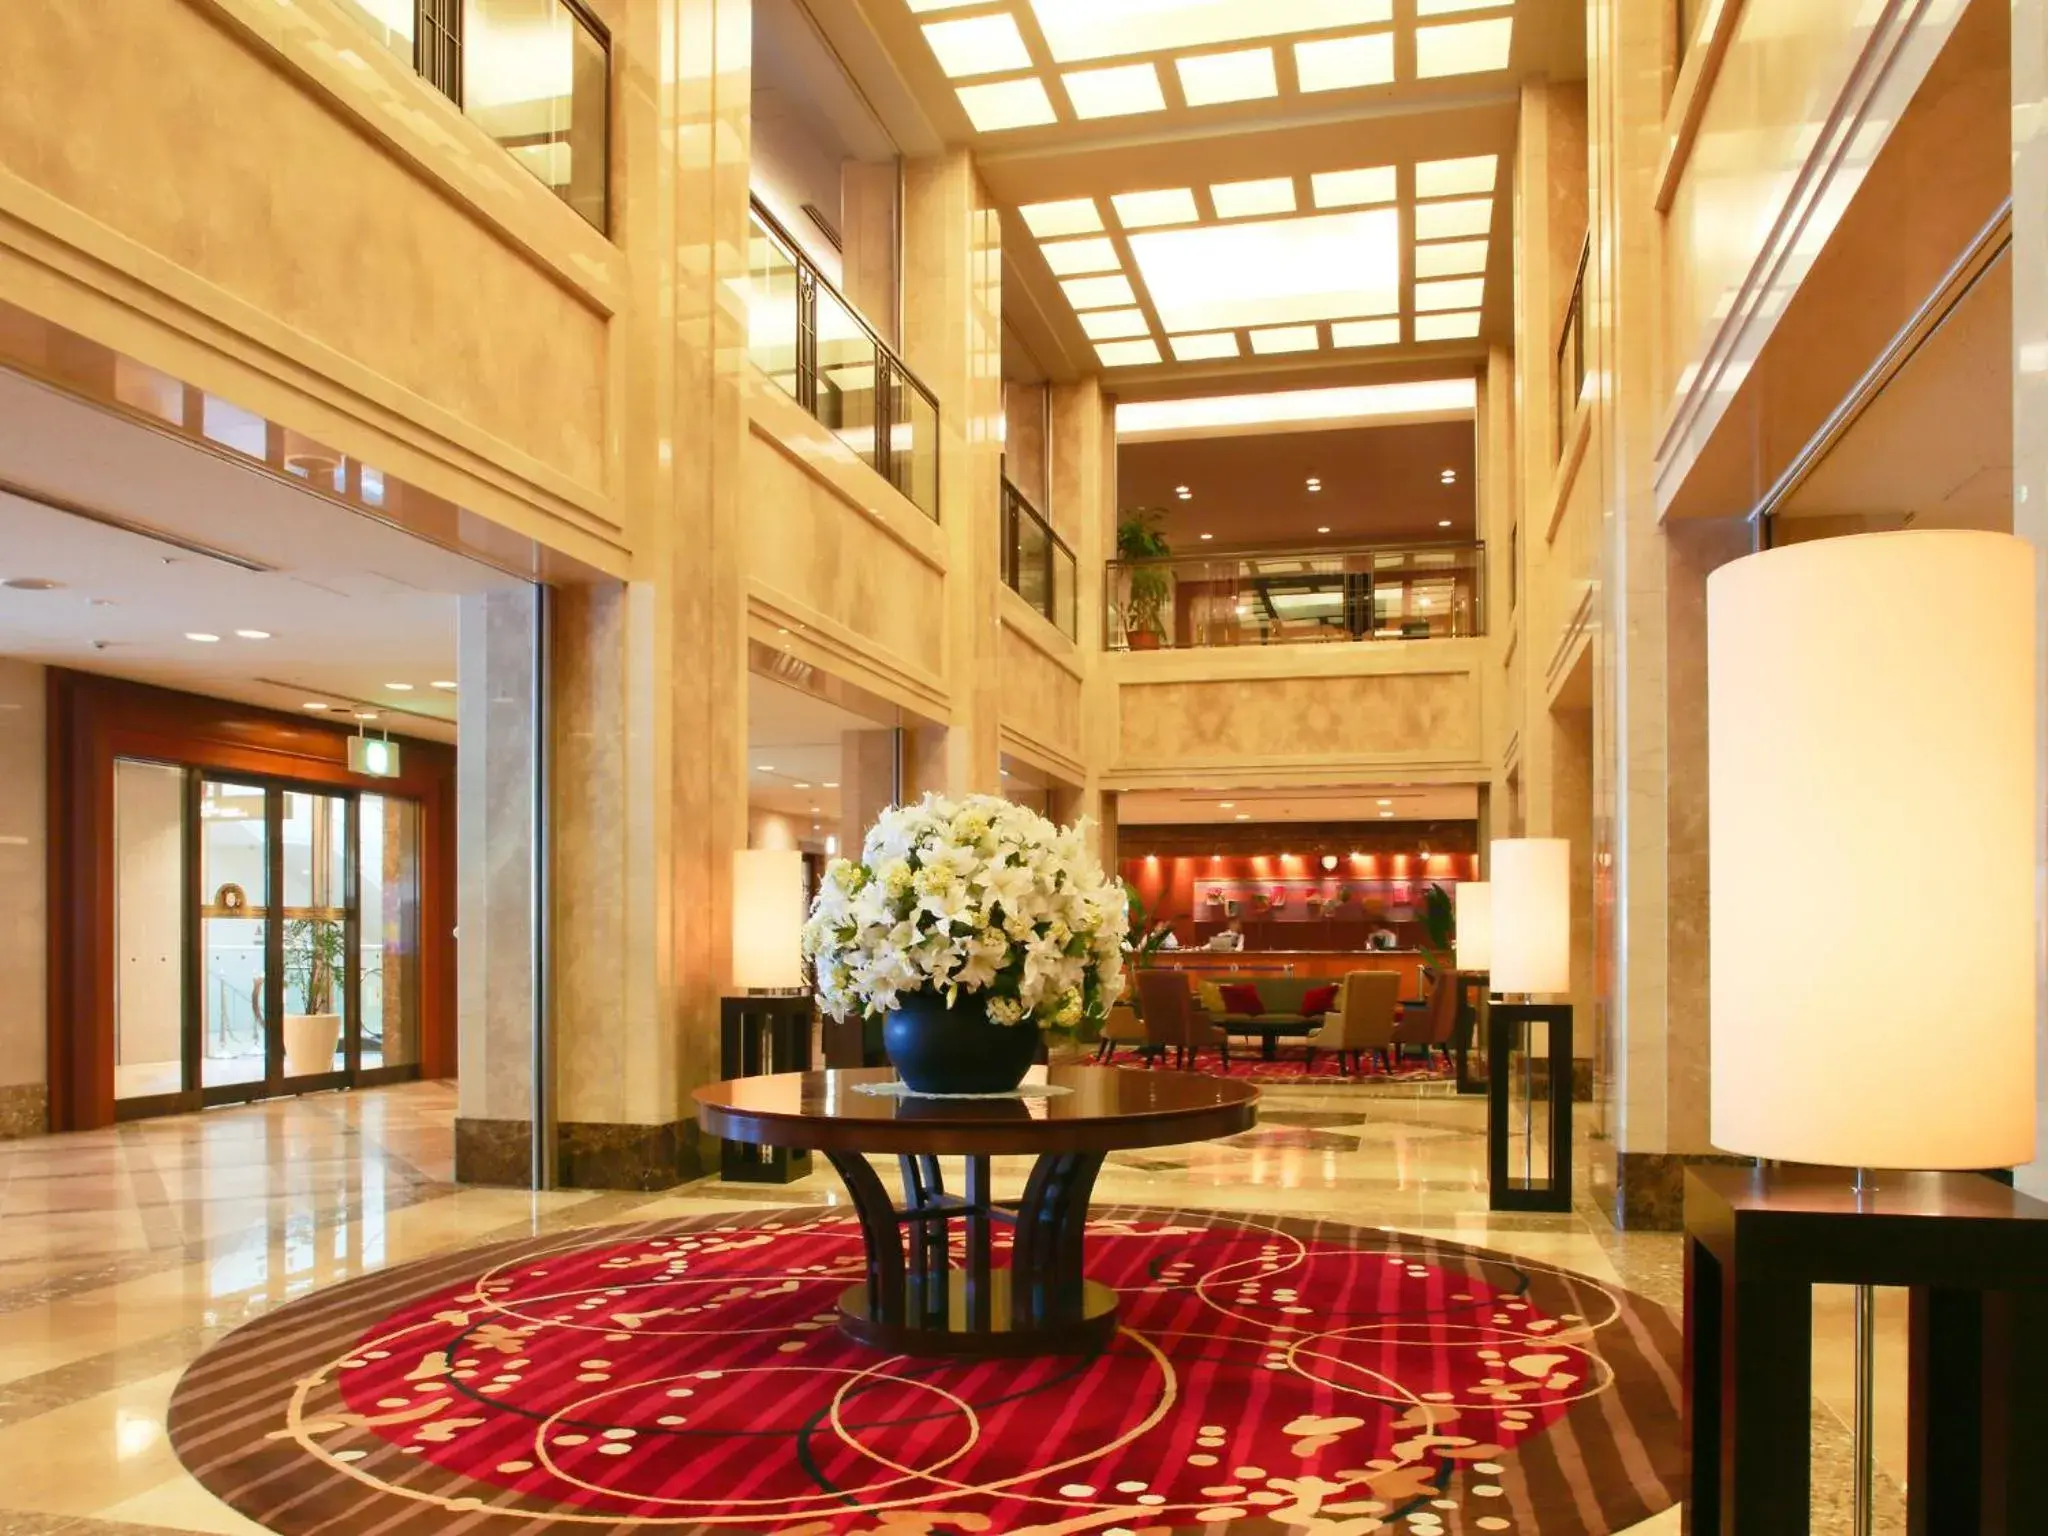 Lobby or reception, Lobby/Reception in Hotel Nikko Nara